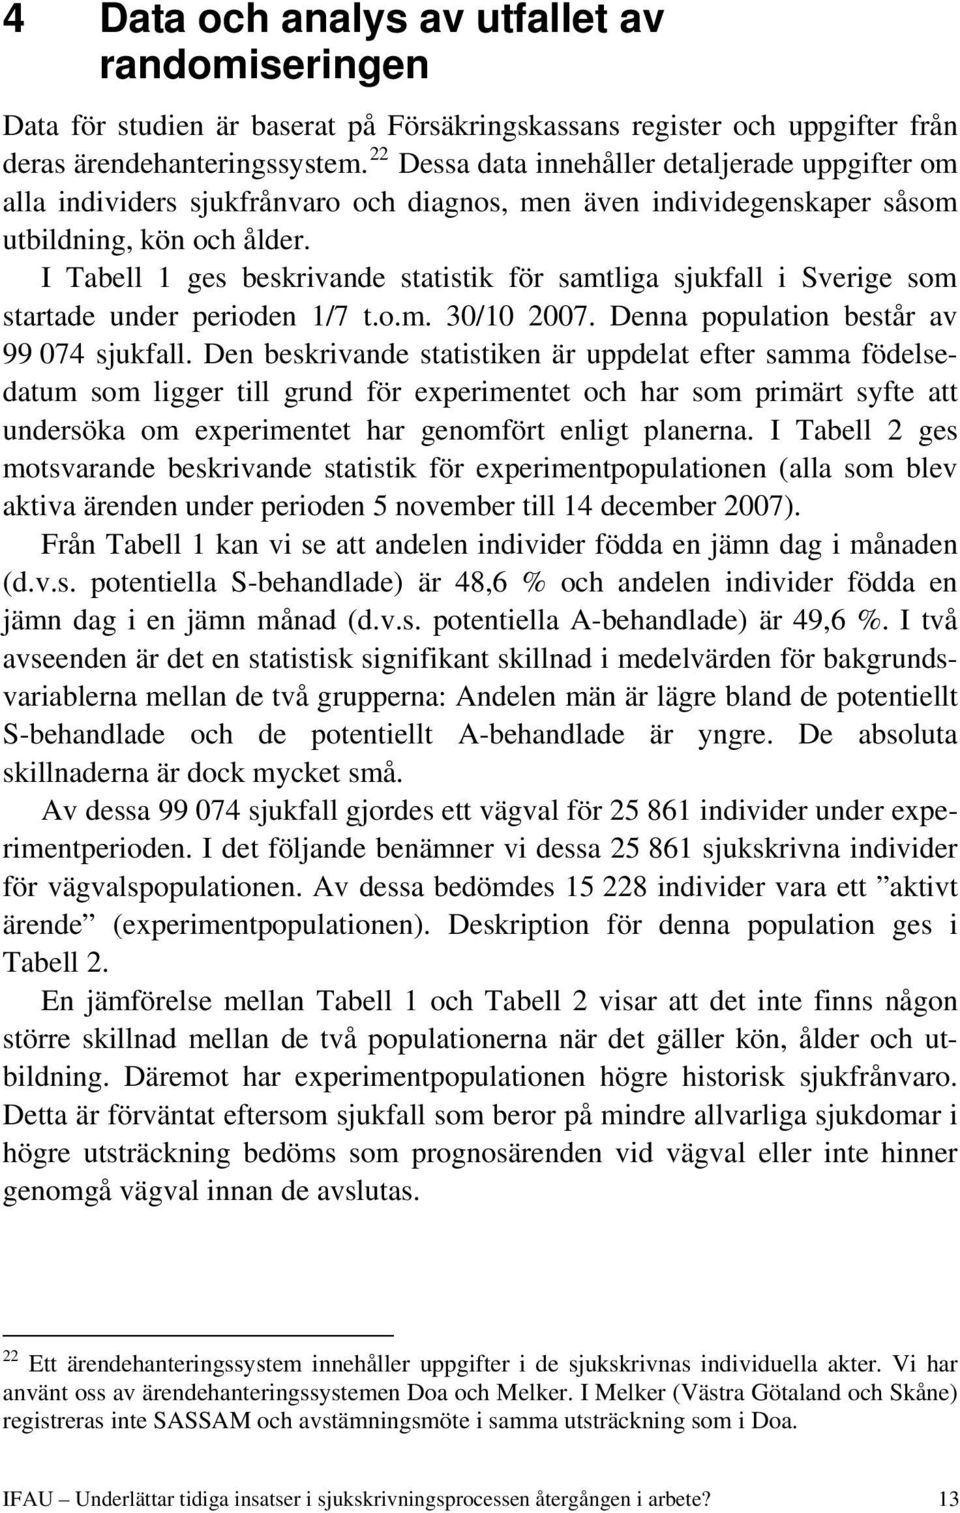 I Tabell 1 ges beskrivande statistik för samtliga sjukfall i Sverige som startade under perioden 1/7 t.o.m. 30/10 2007. Denna population består av 99 074 sjukfall.